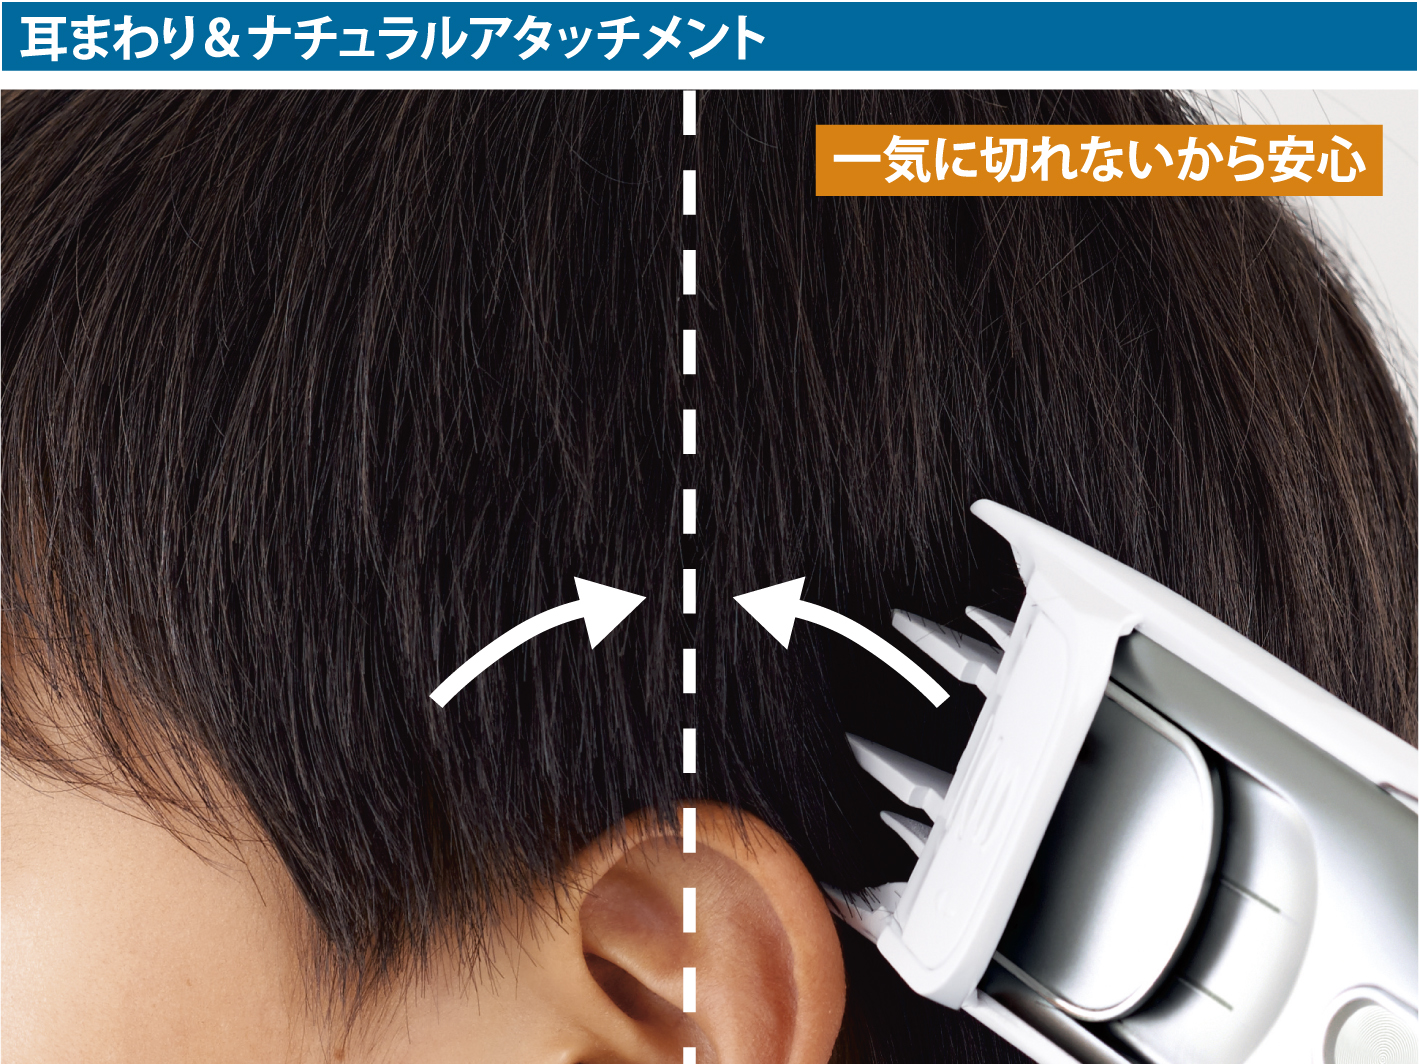 自宅で簡単にヘアーカットができるパナソニックのヘアーカッター カットモード 3機種を発売 トピックス Panasonic Newsroom Japan パナソニック ニュースルーム ジャパン